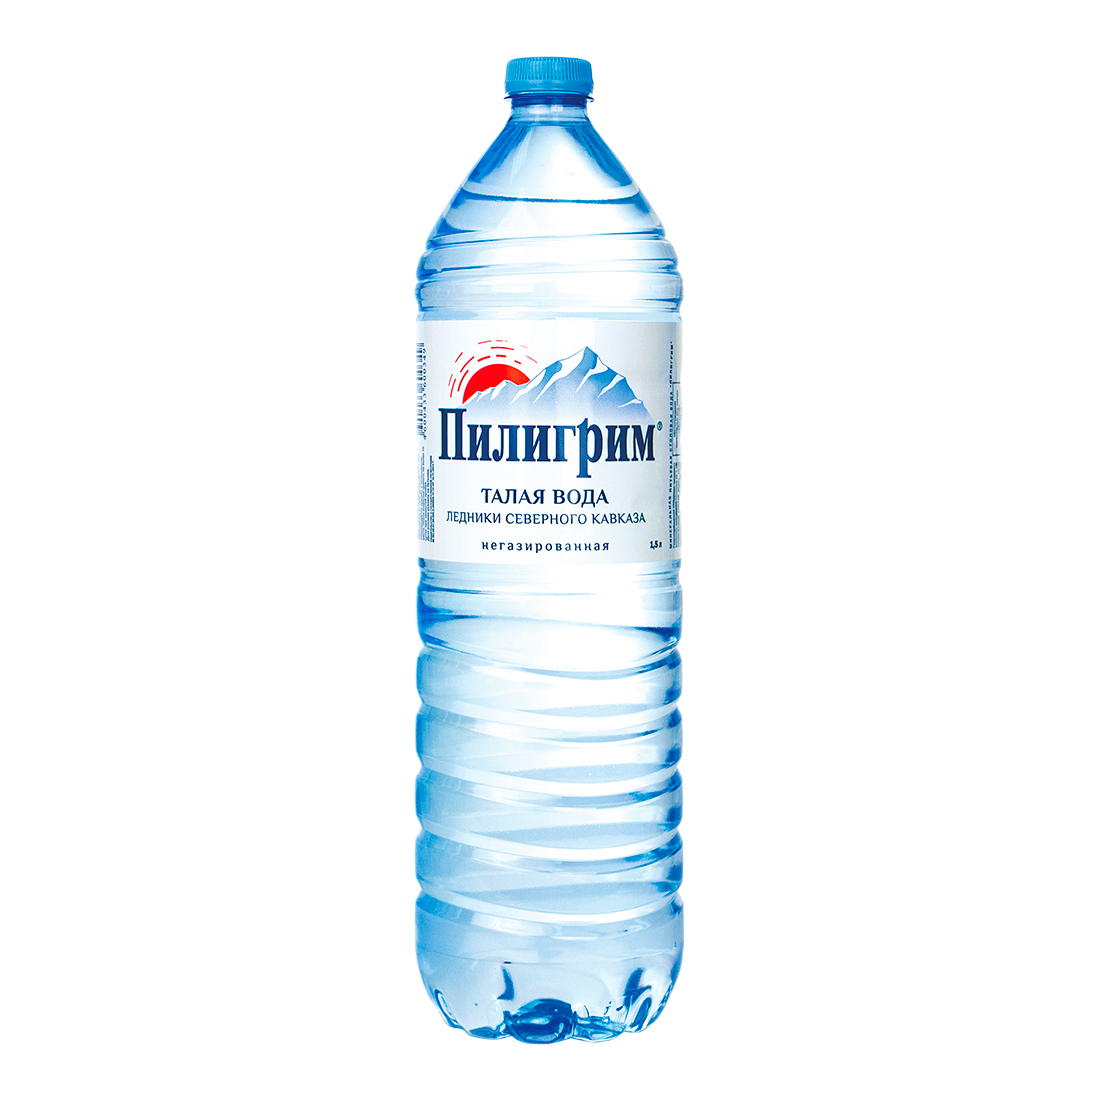 Пилигрим - вода миниральная природная столовая питьевая 1.5 литра, без газа, пэт, 6 шт. в уп. - 1